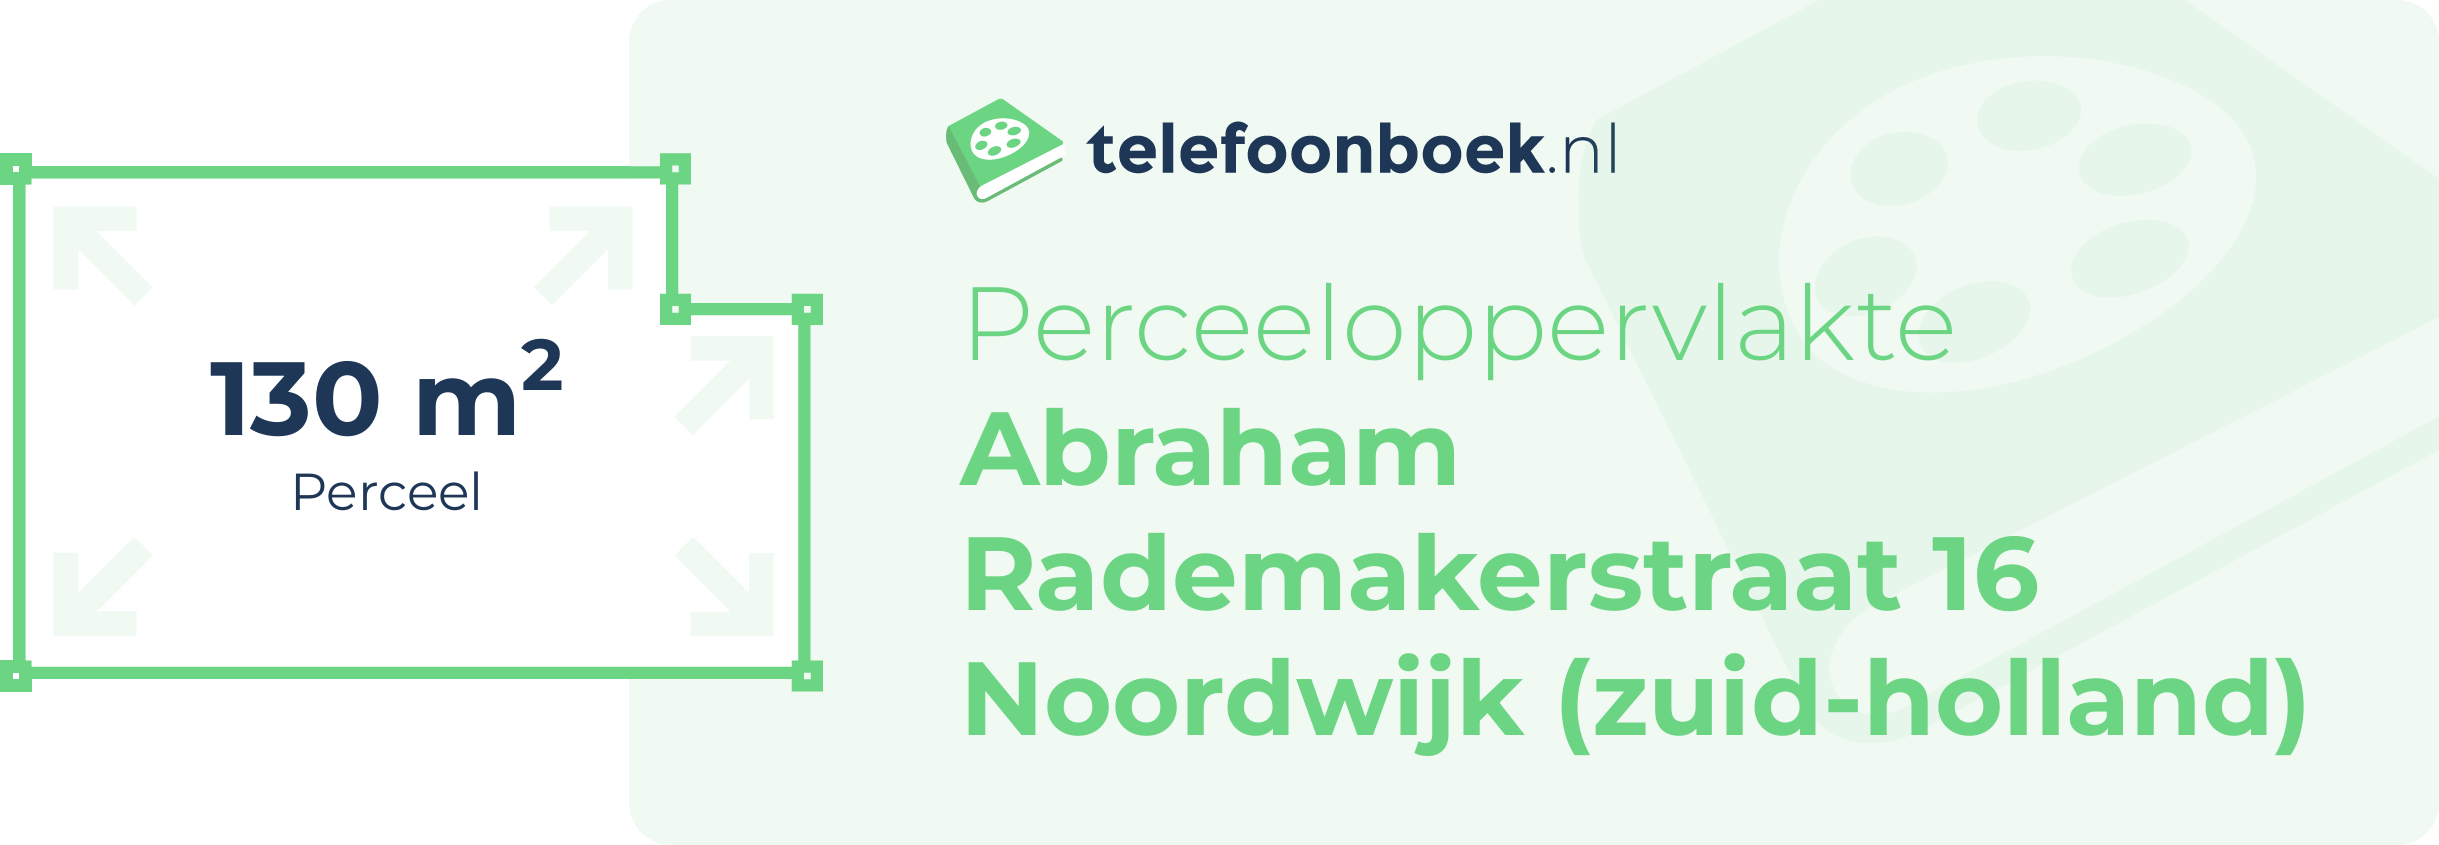 Perceeloppervlakte Abraham Rademakerstraat 16 Noordwijk (Zuid-Holland)